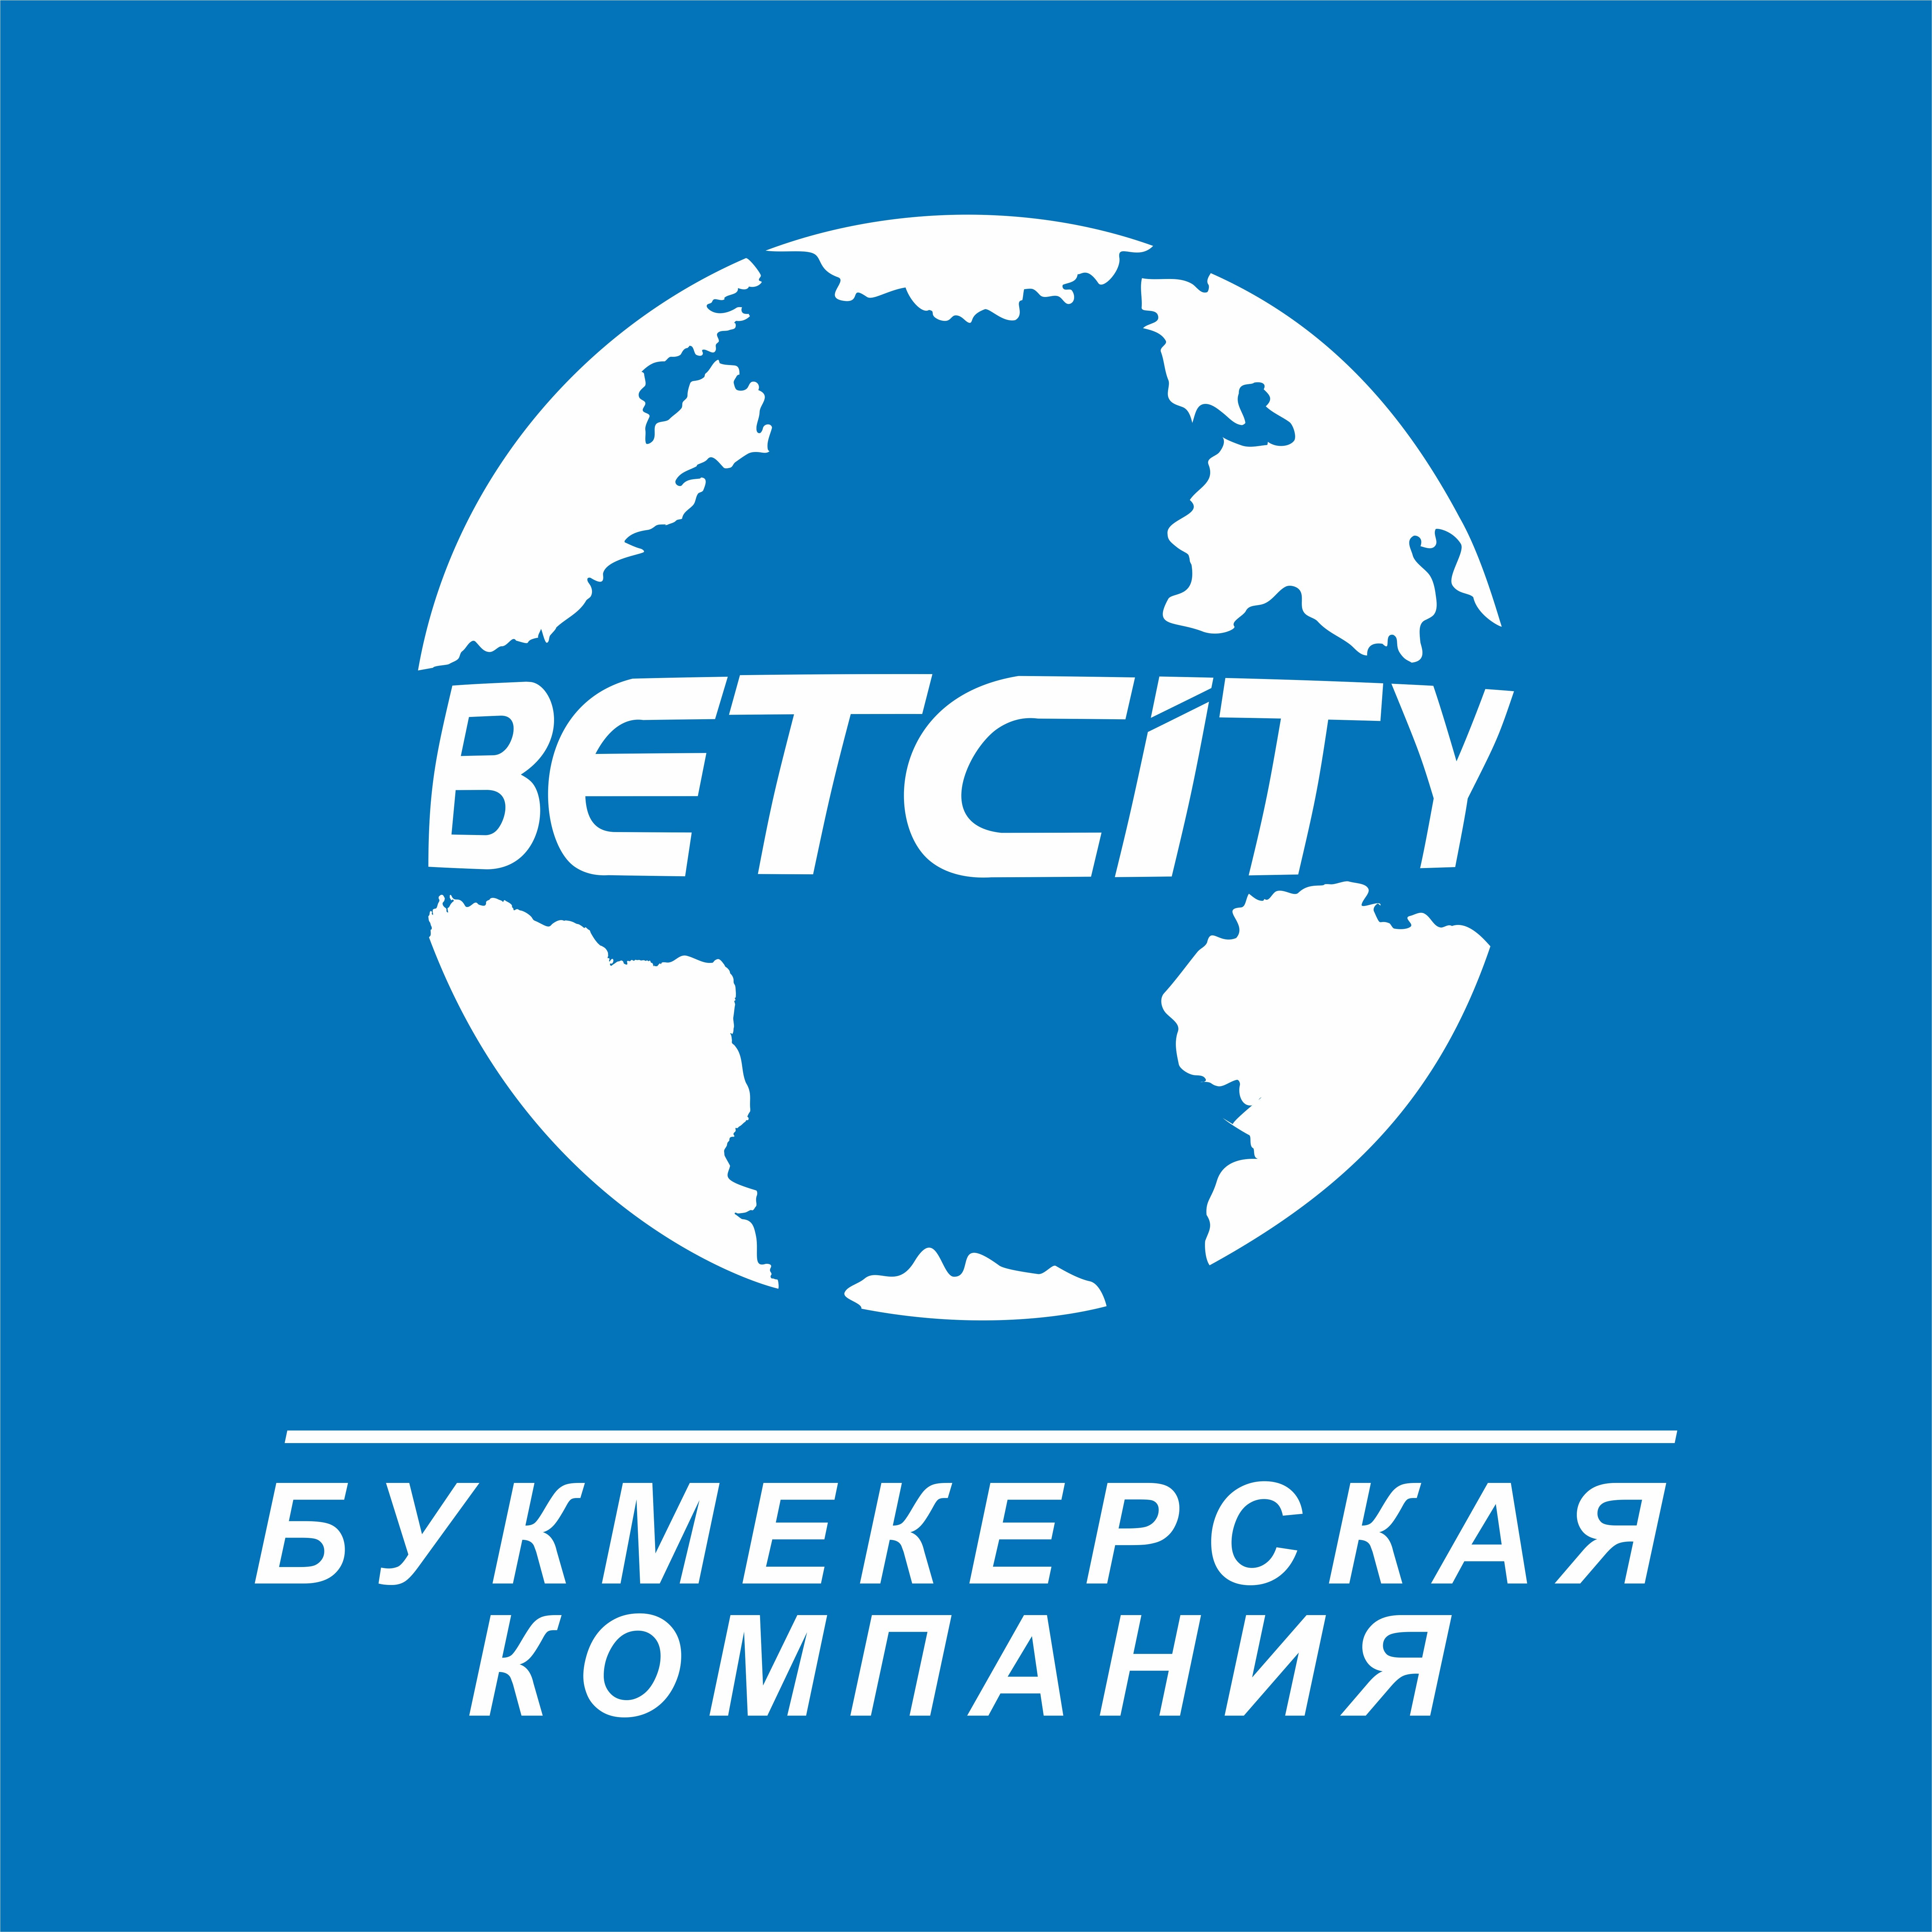 Клиент «Бетсити» выиграл 4,4 млн рублей, поставив на победу «Металлурга» в матче с «Ак Барсом»